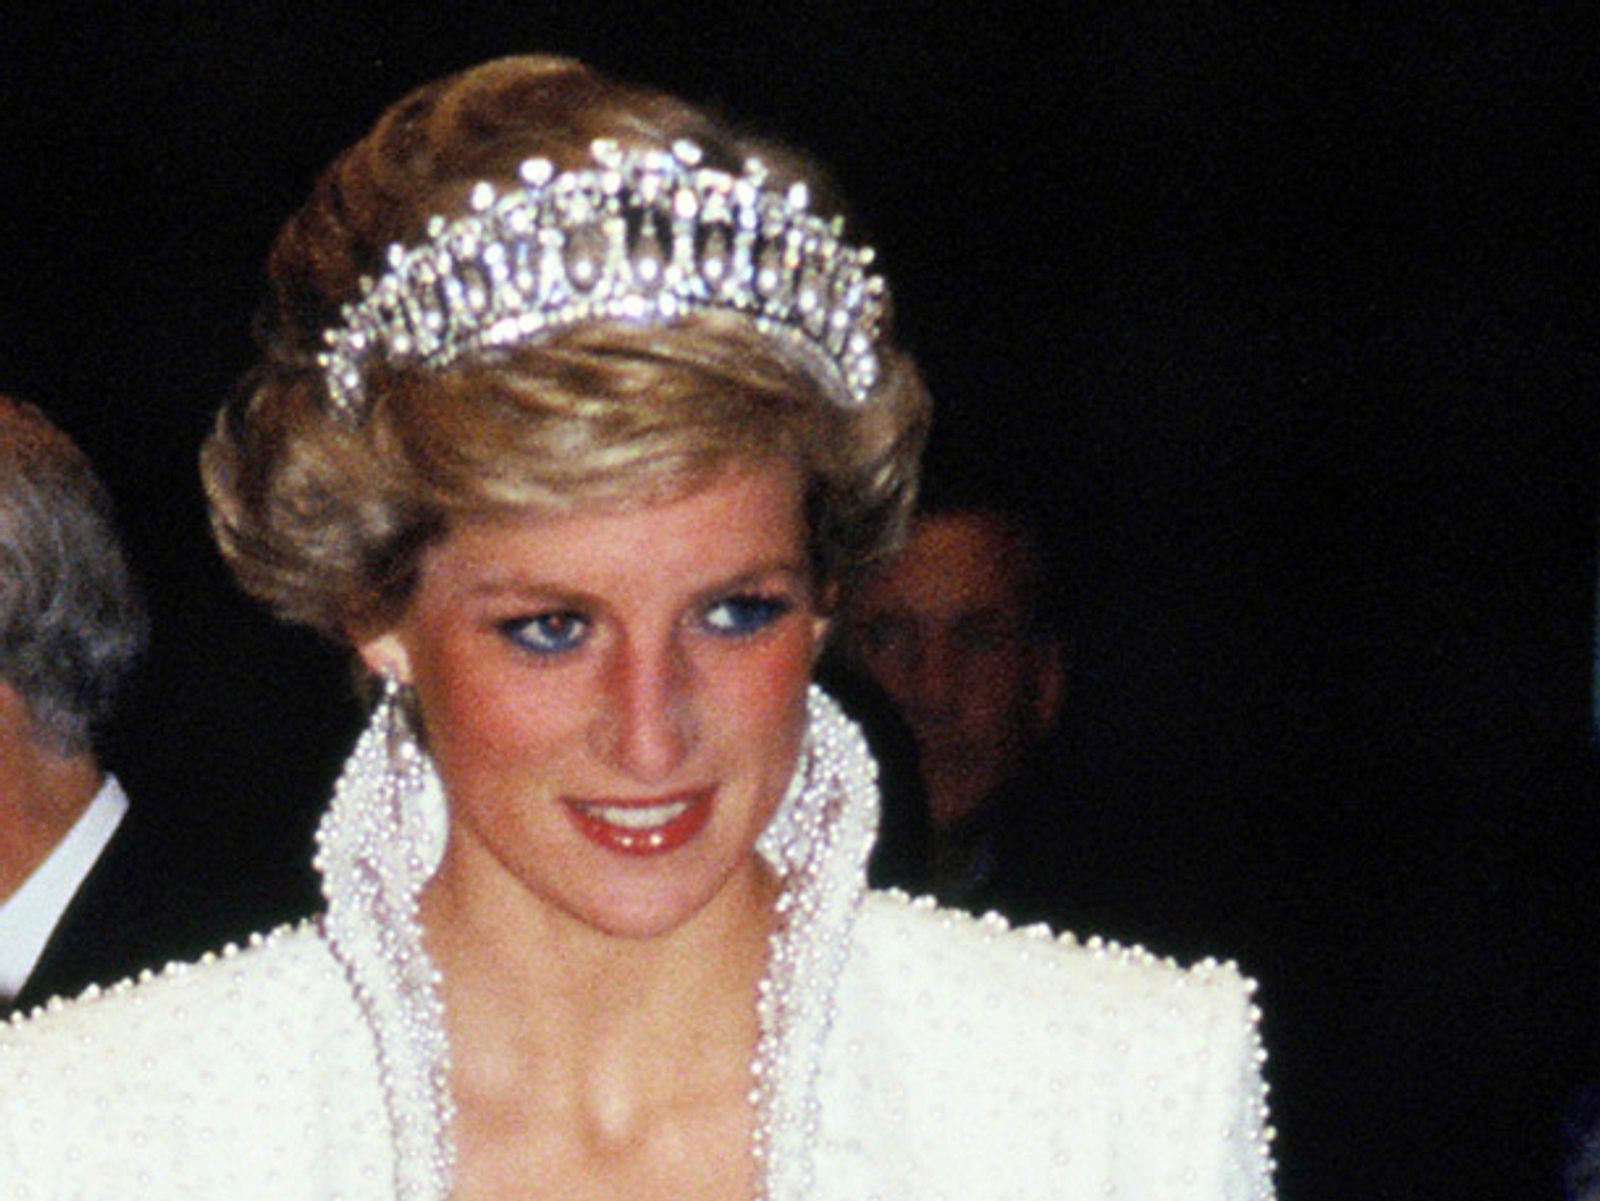 Jubiläen 2017: 20. Todestag von Prinzessin Diana | Jubiläen 2017 ...